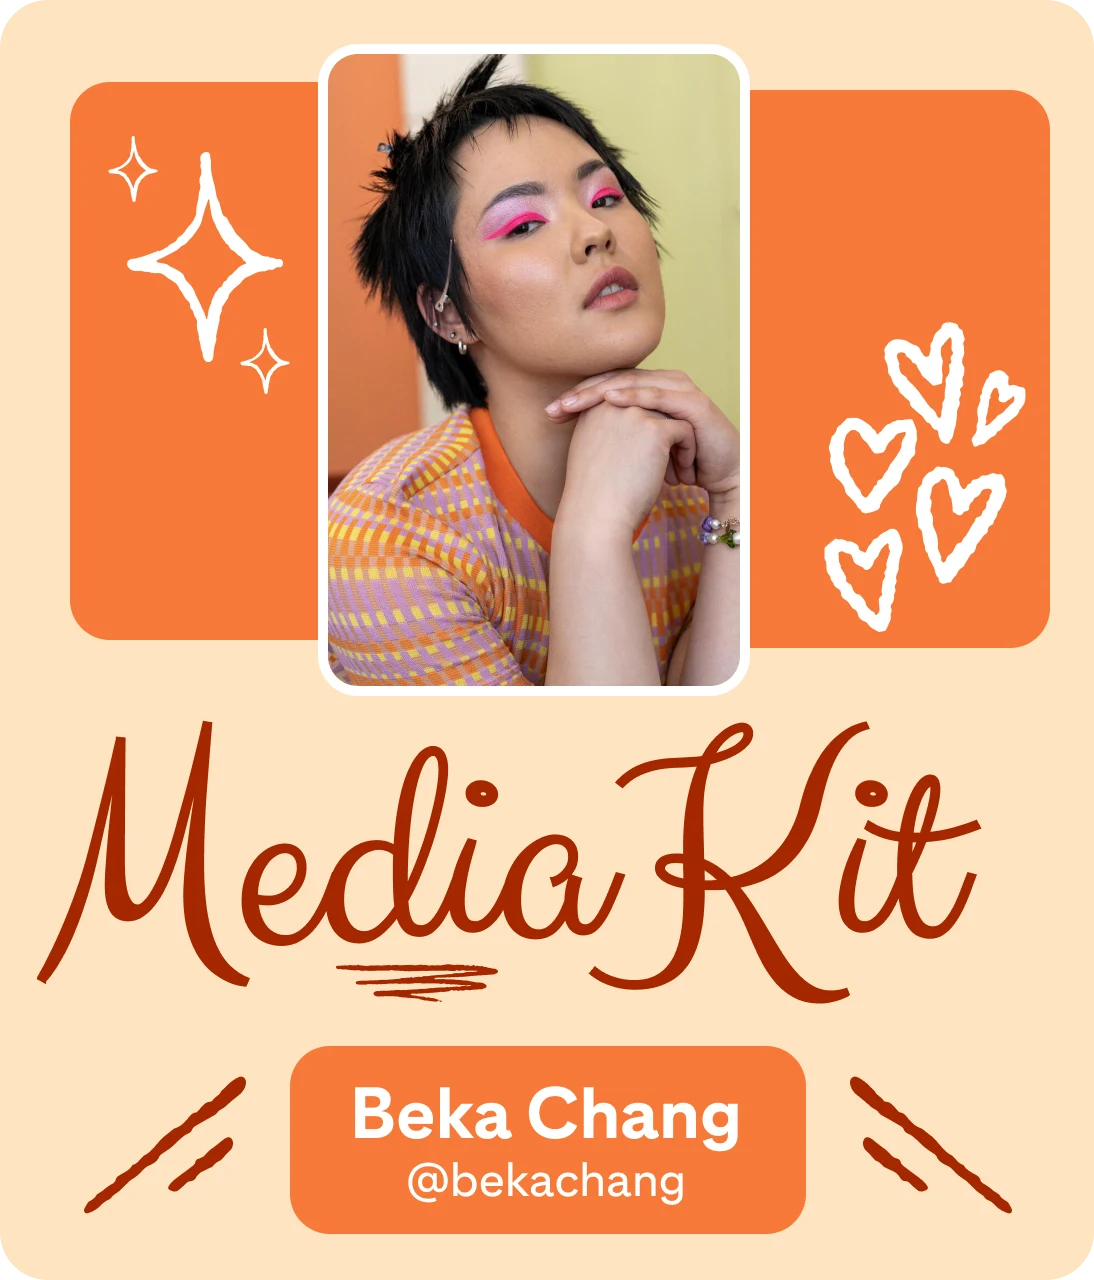 Orange-themed media kit banner for Beka Chang